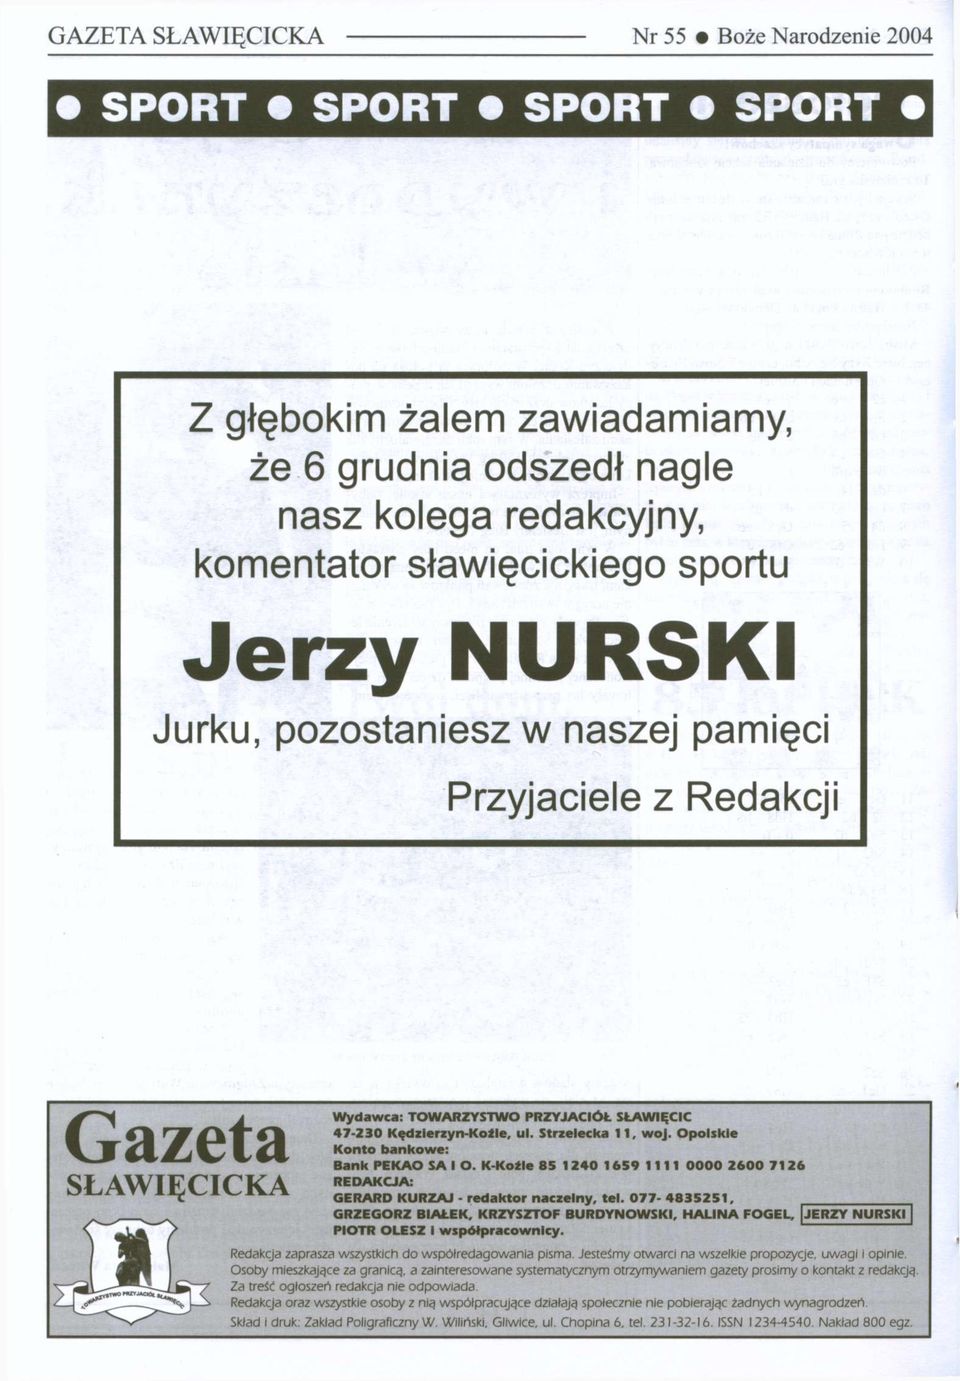 K-Koźle 85 1240 1659 1111 0000 2600 7126 REDAKCJA: GERARD KURZAJ - redaktor naczelny, tel.